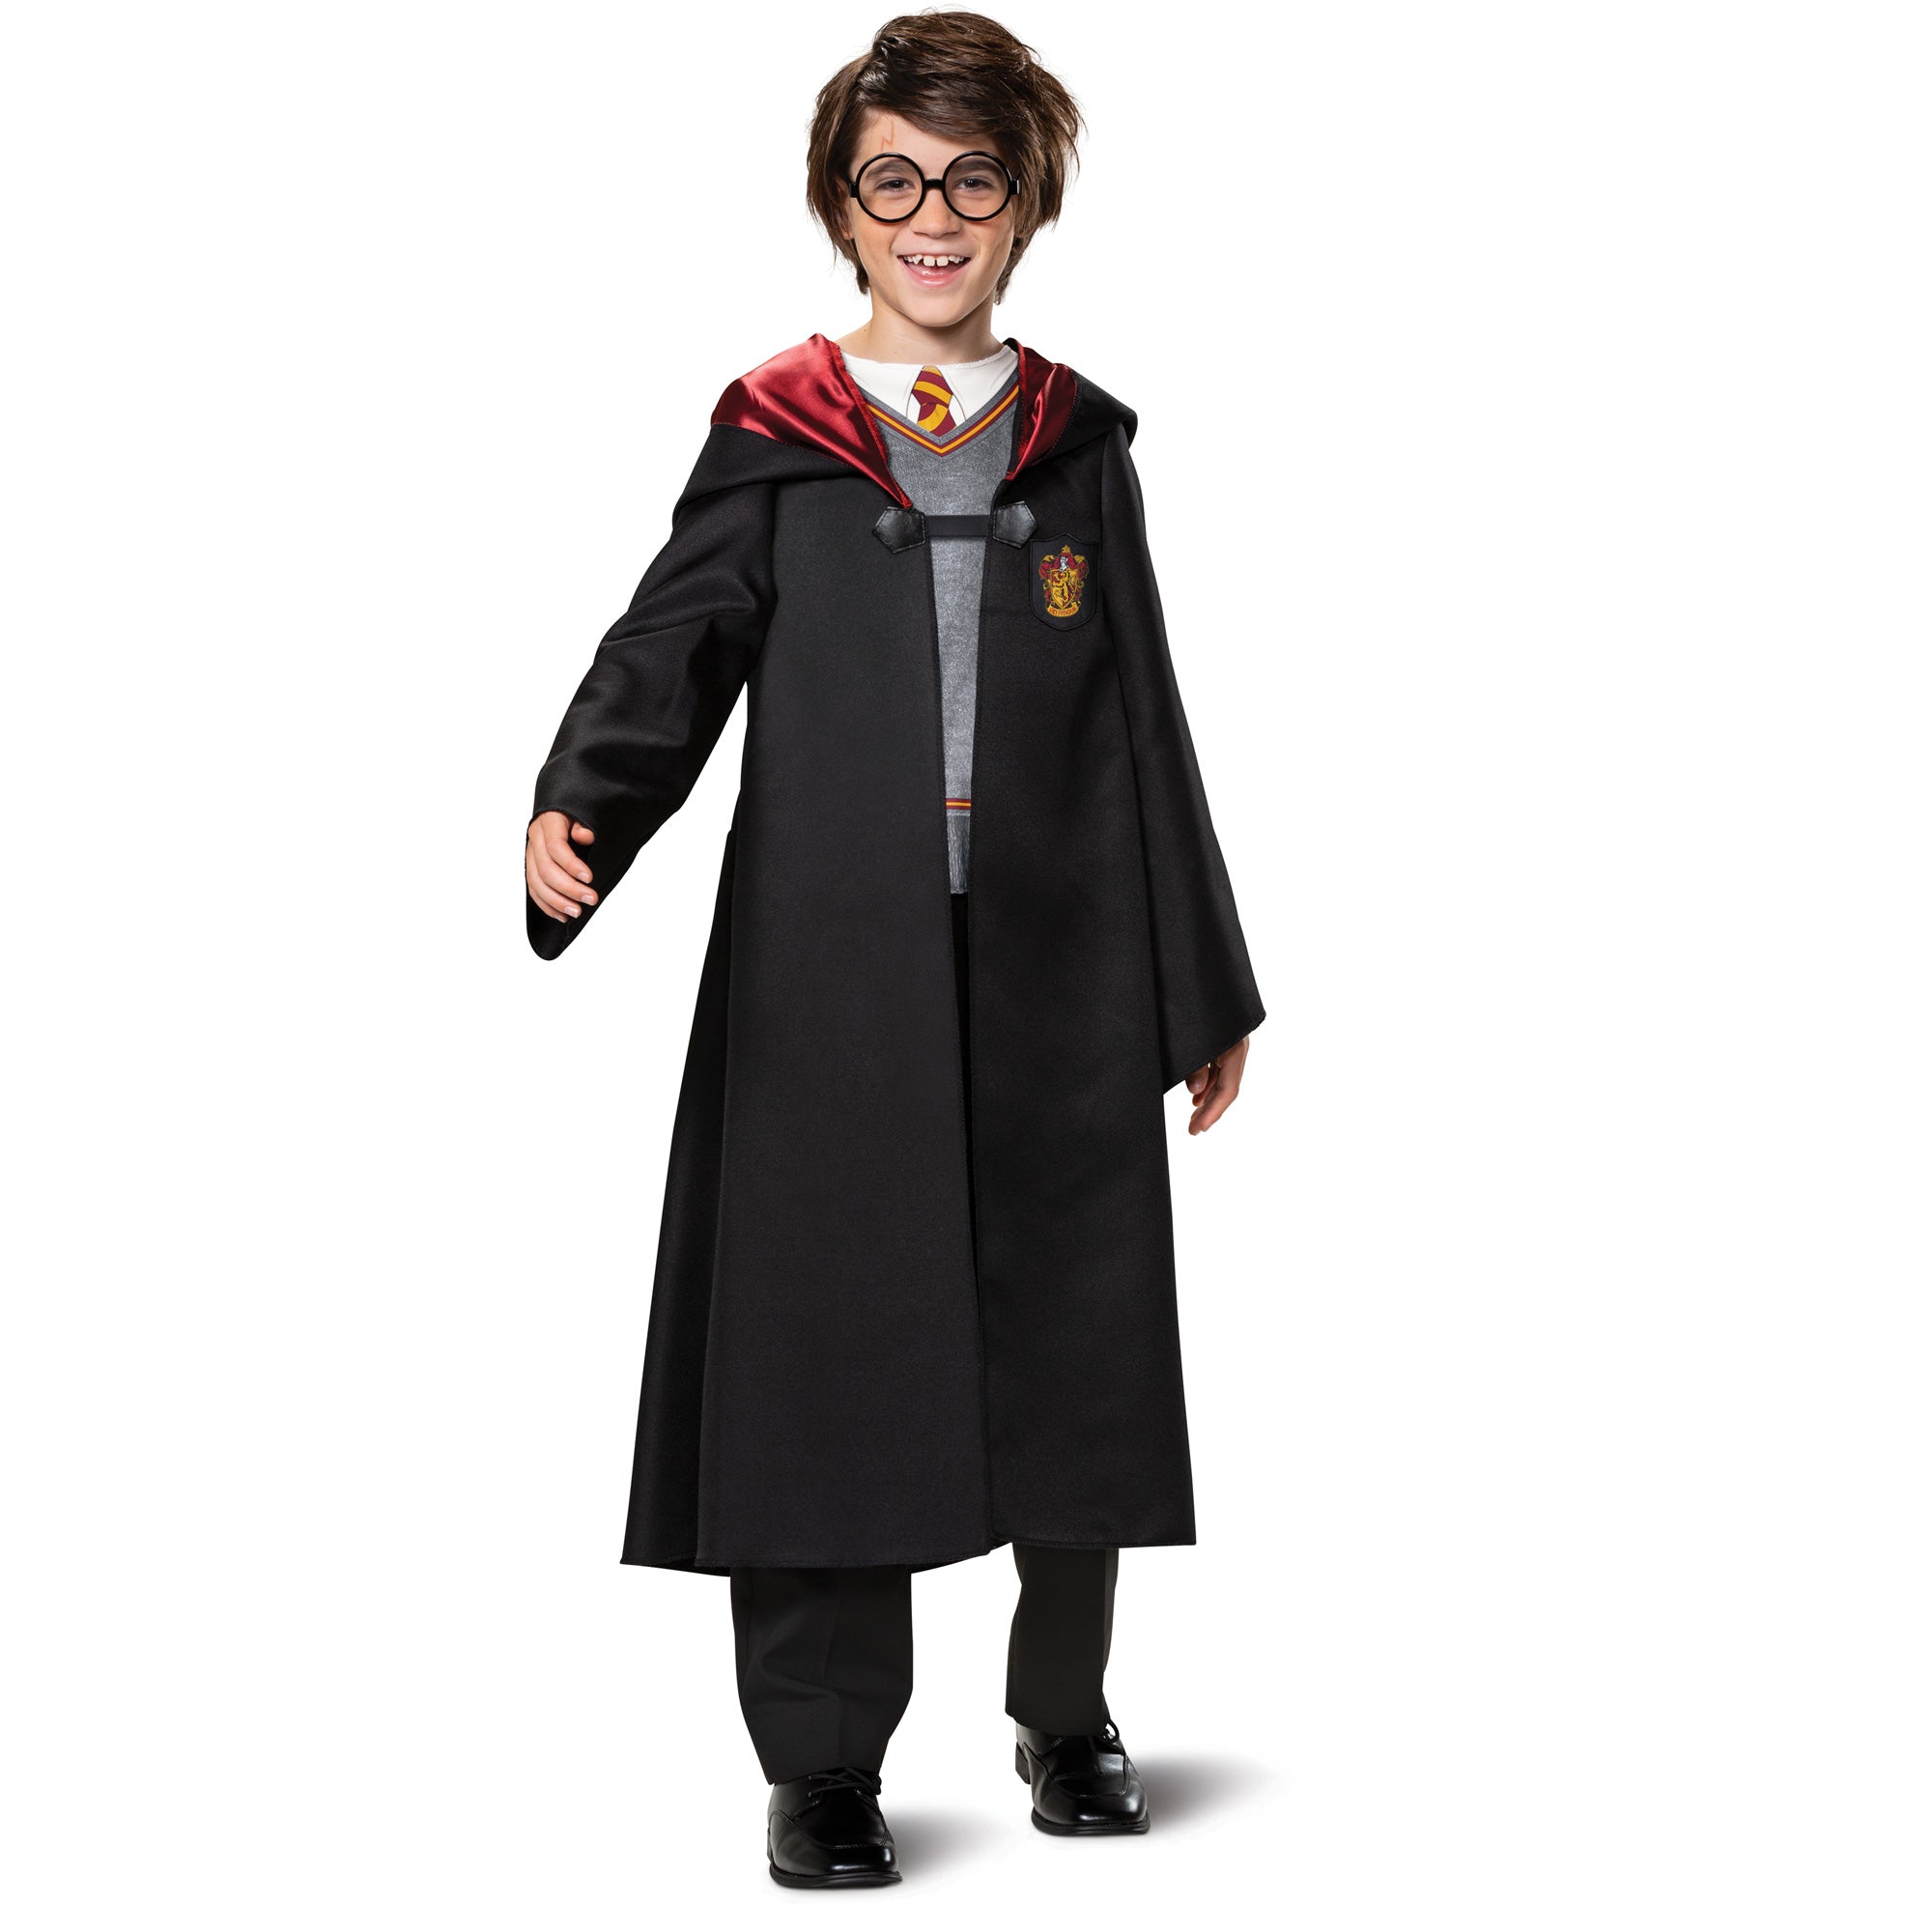 Costume de Harry potter pour enfant